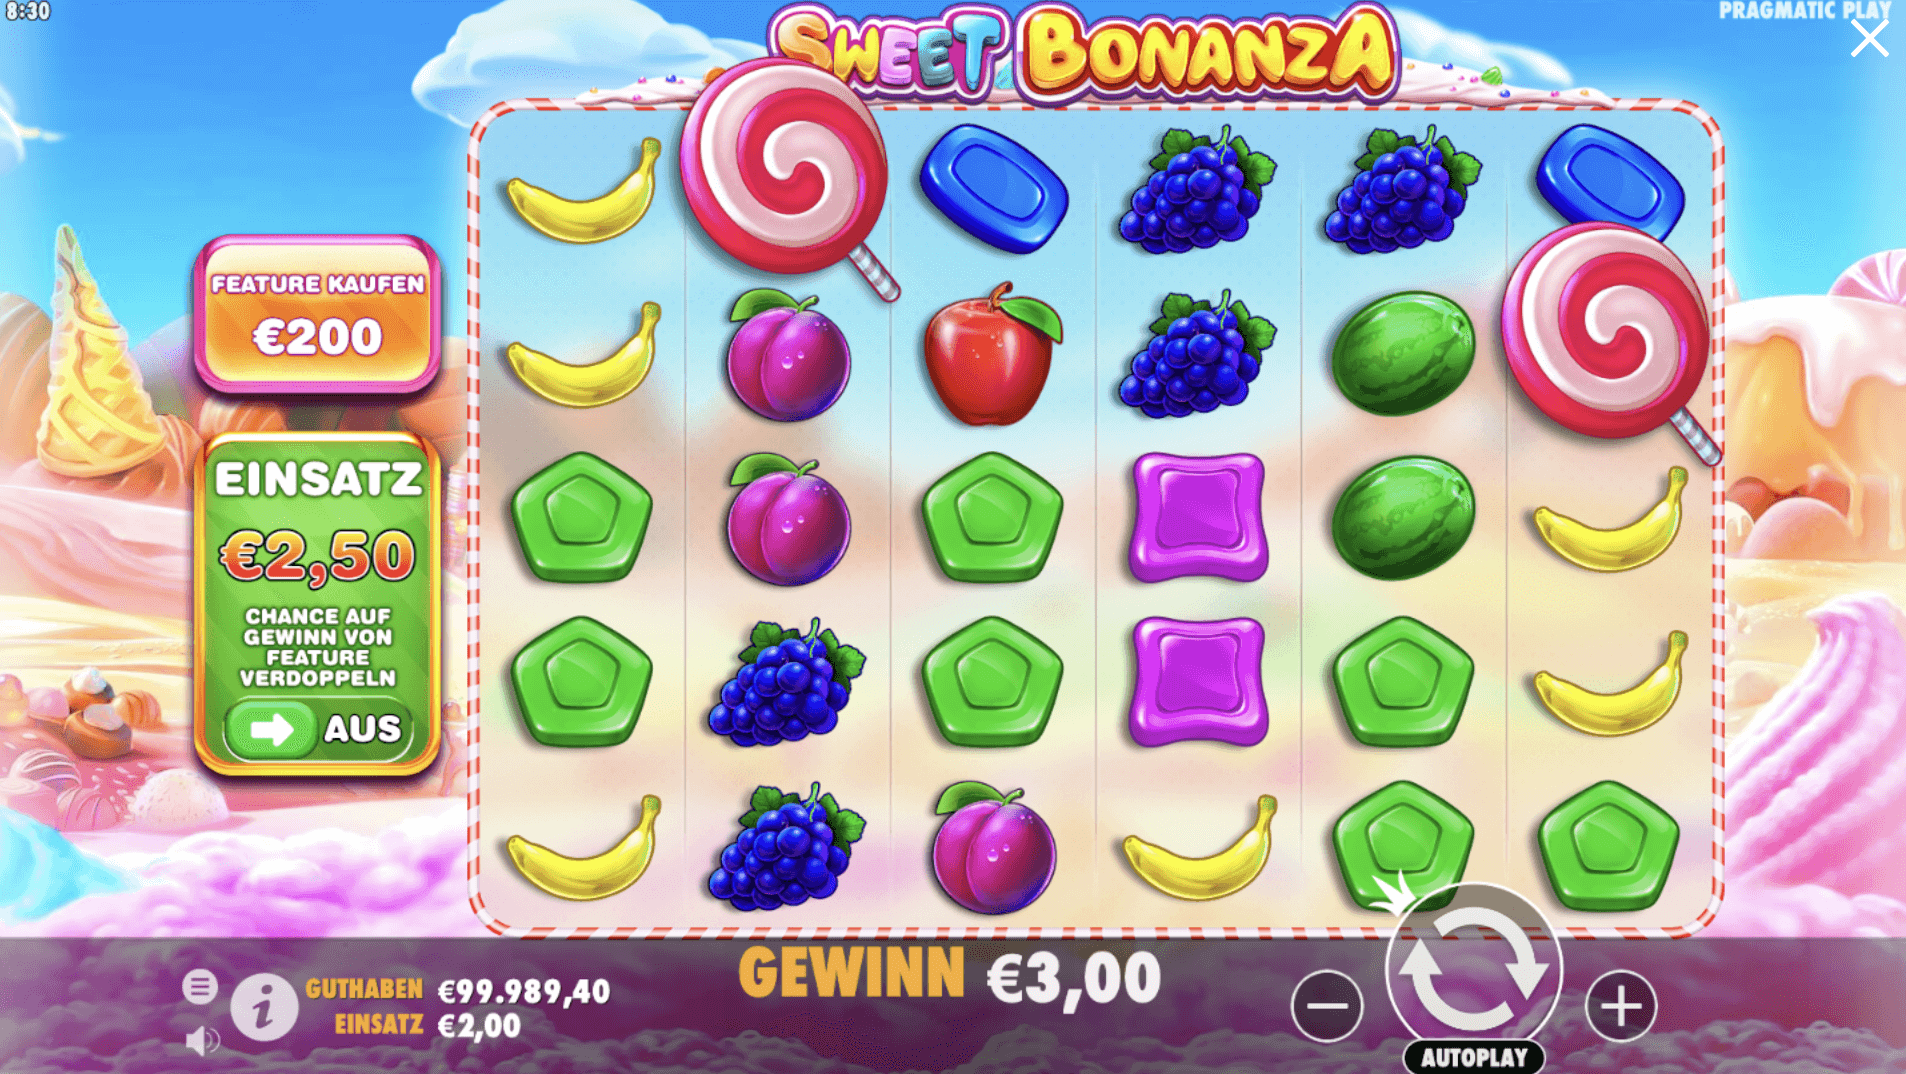 Sweet Bonanza Slot Spieloberfläche mit zwei Scatter-Symbolen